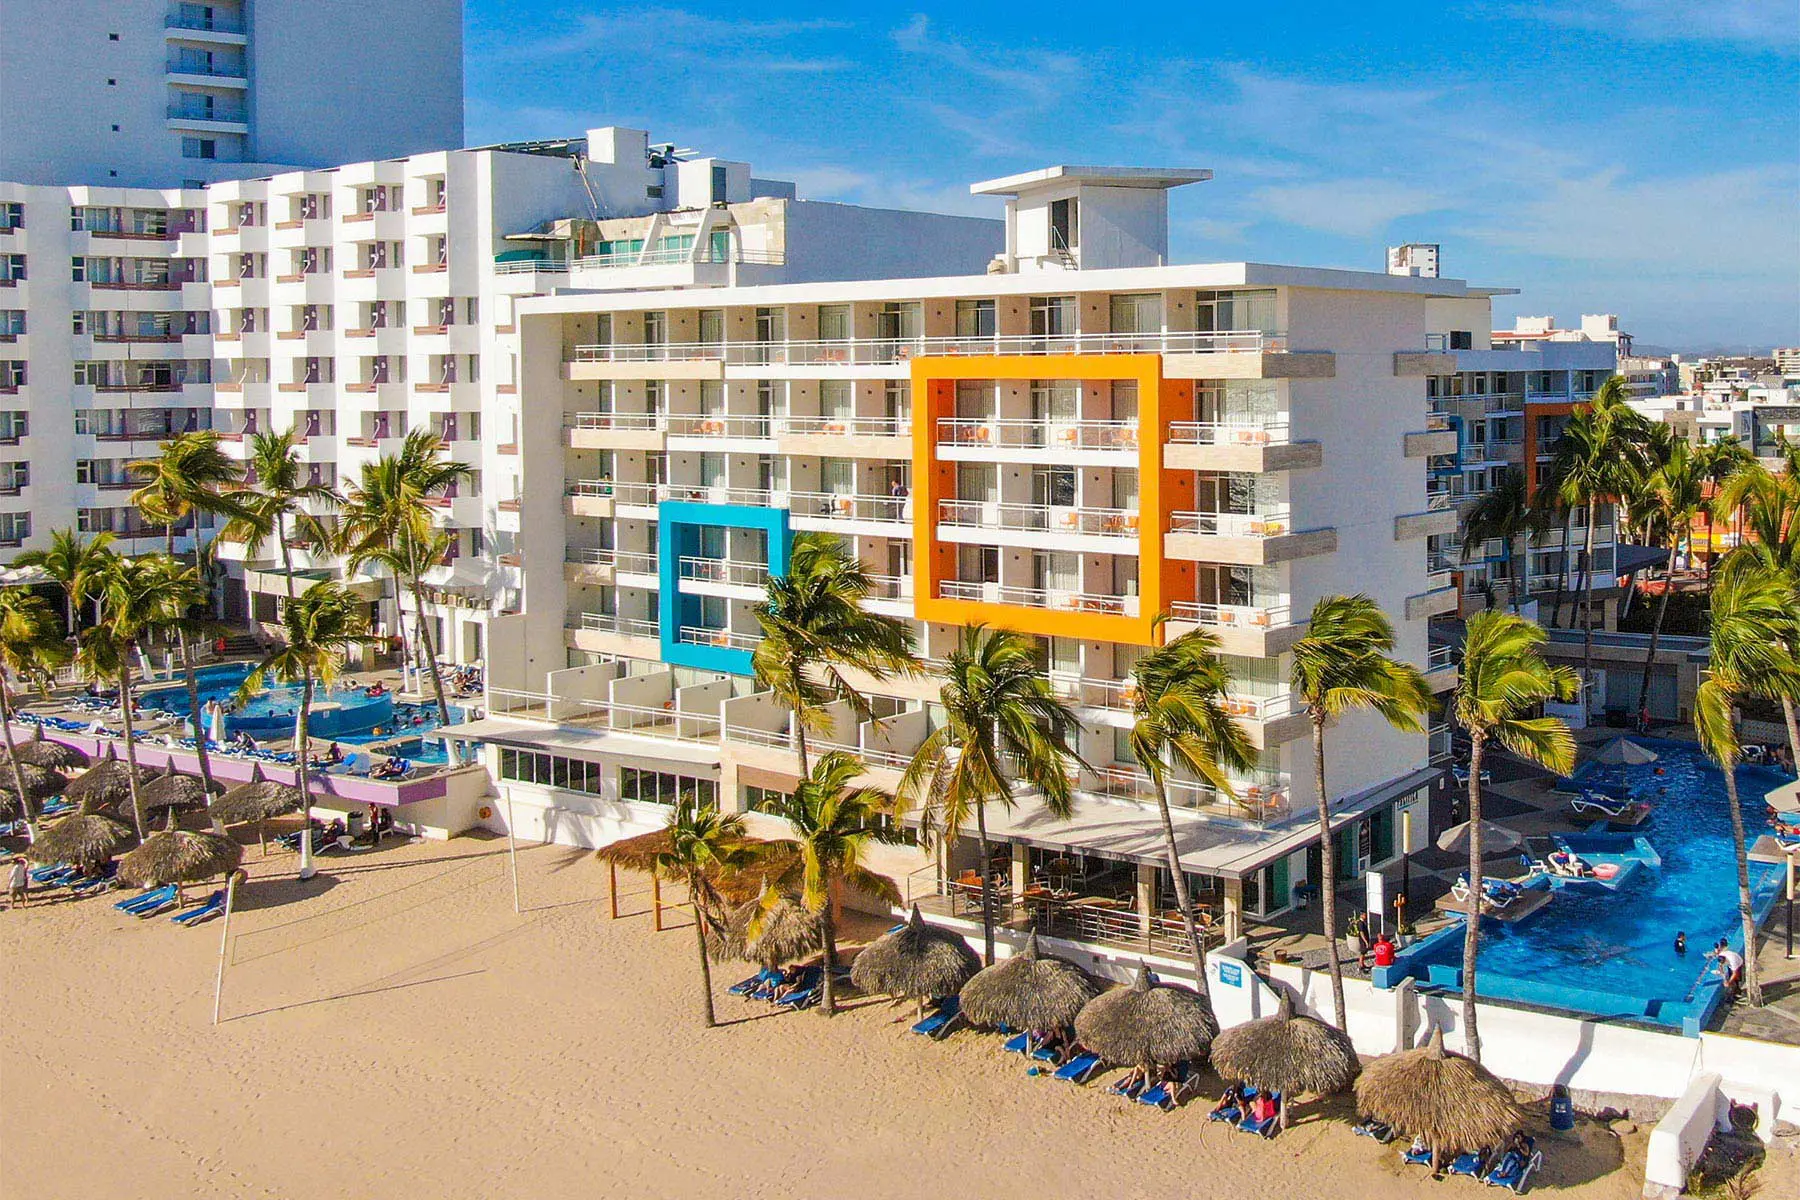 Fachada de Hotel Star Palace vista panorámica, incluyendo alberca, área de playa Zona Dorada Mazatlán